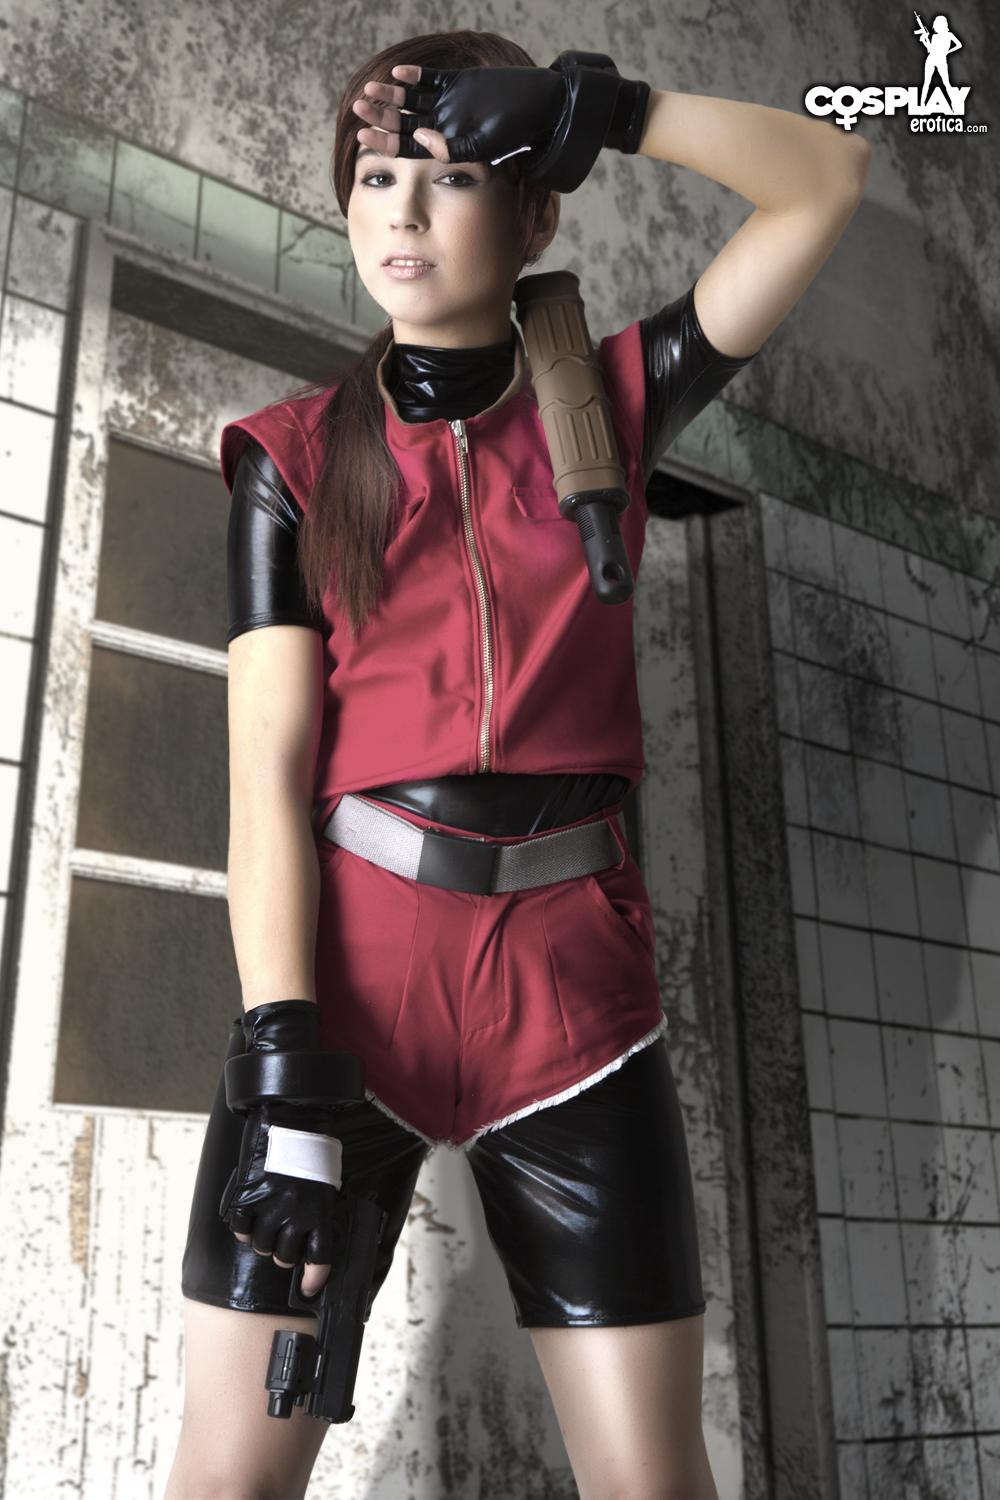 Cosplayerin Stacy verkleidet sich als Claire aus Resident Evil
 #60007811